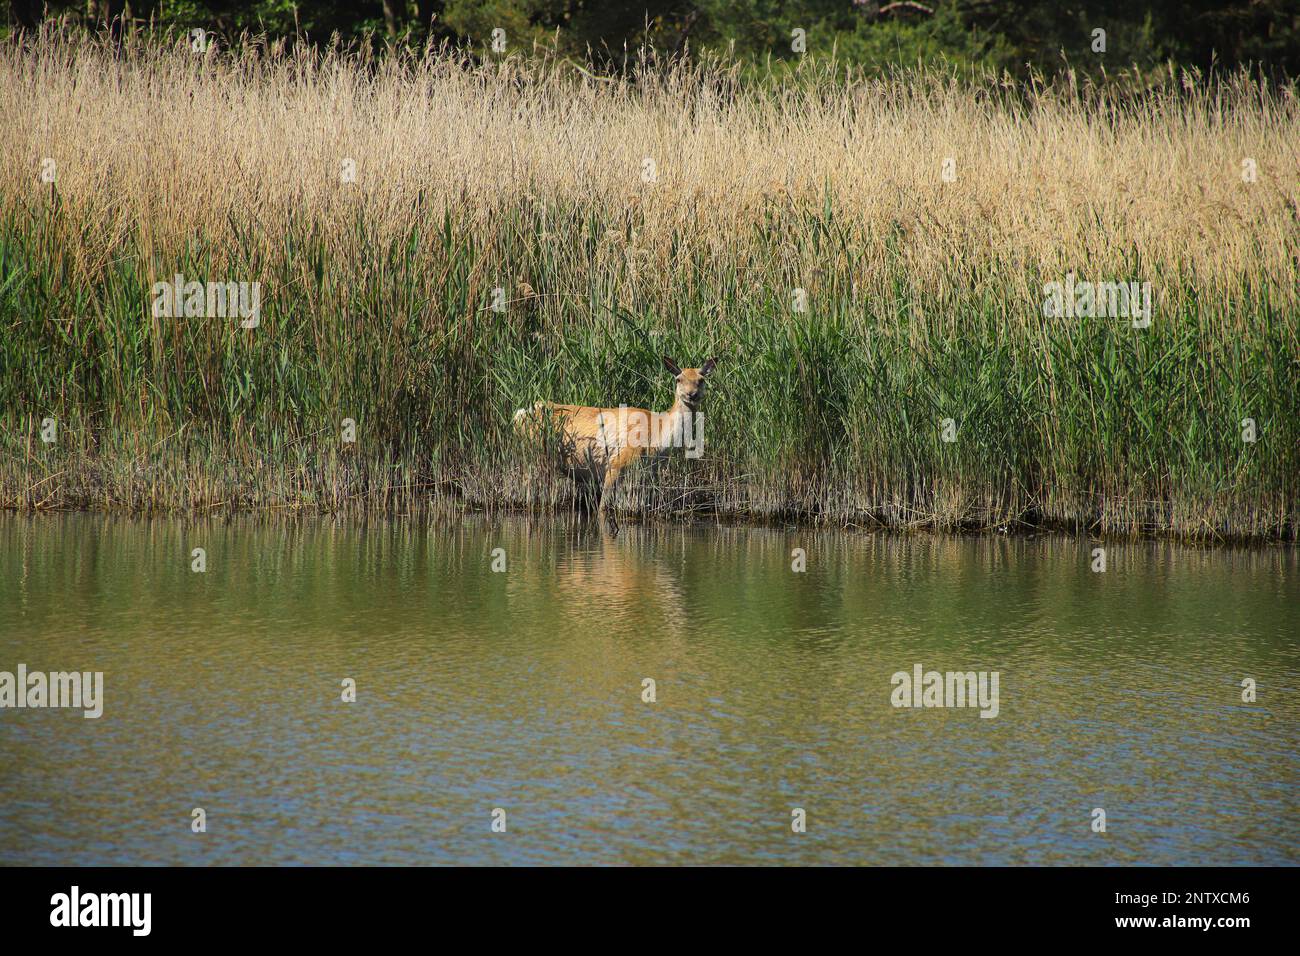 Un cerf sauvage dans le parc national de la région de la lagune de Poméranie occidentale, péninsule de Darss - Allemagne Banque D'Images